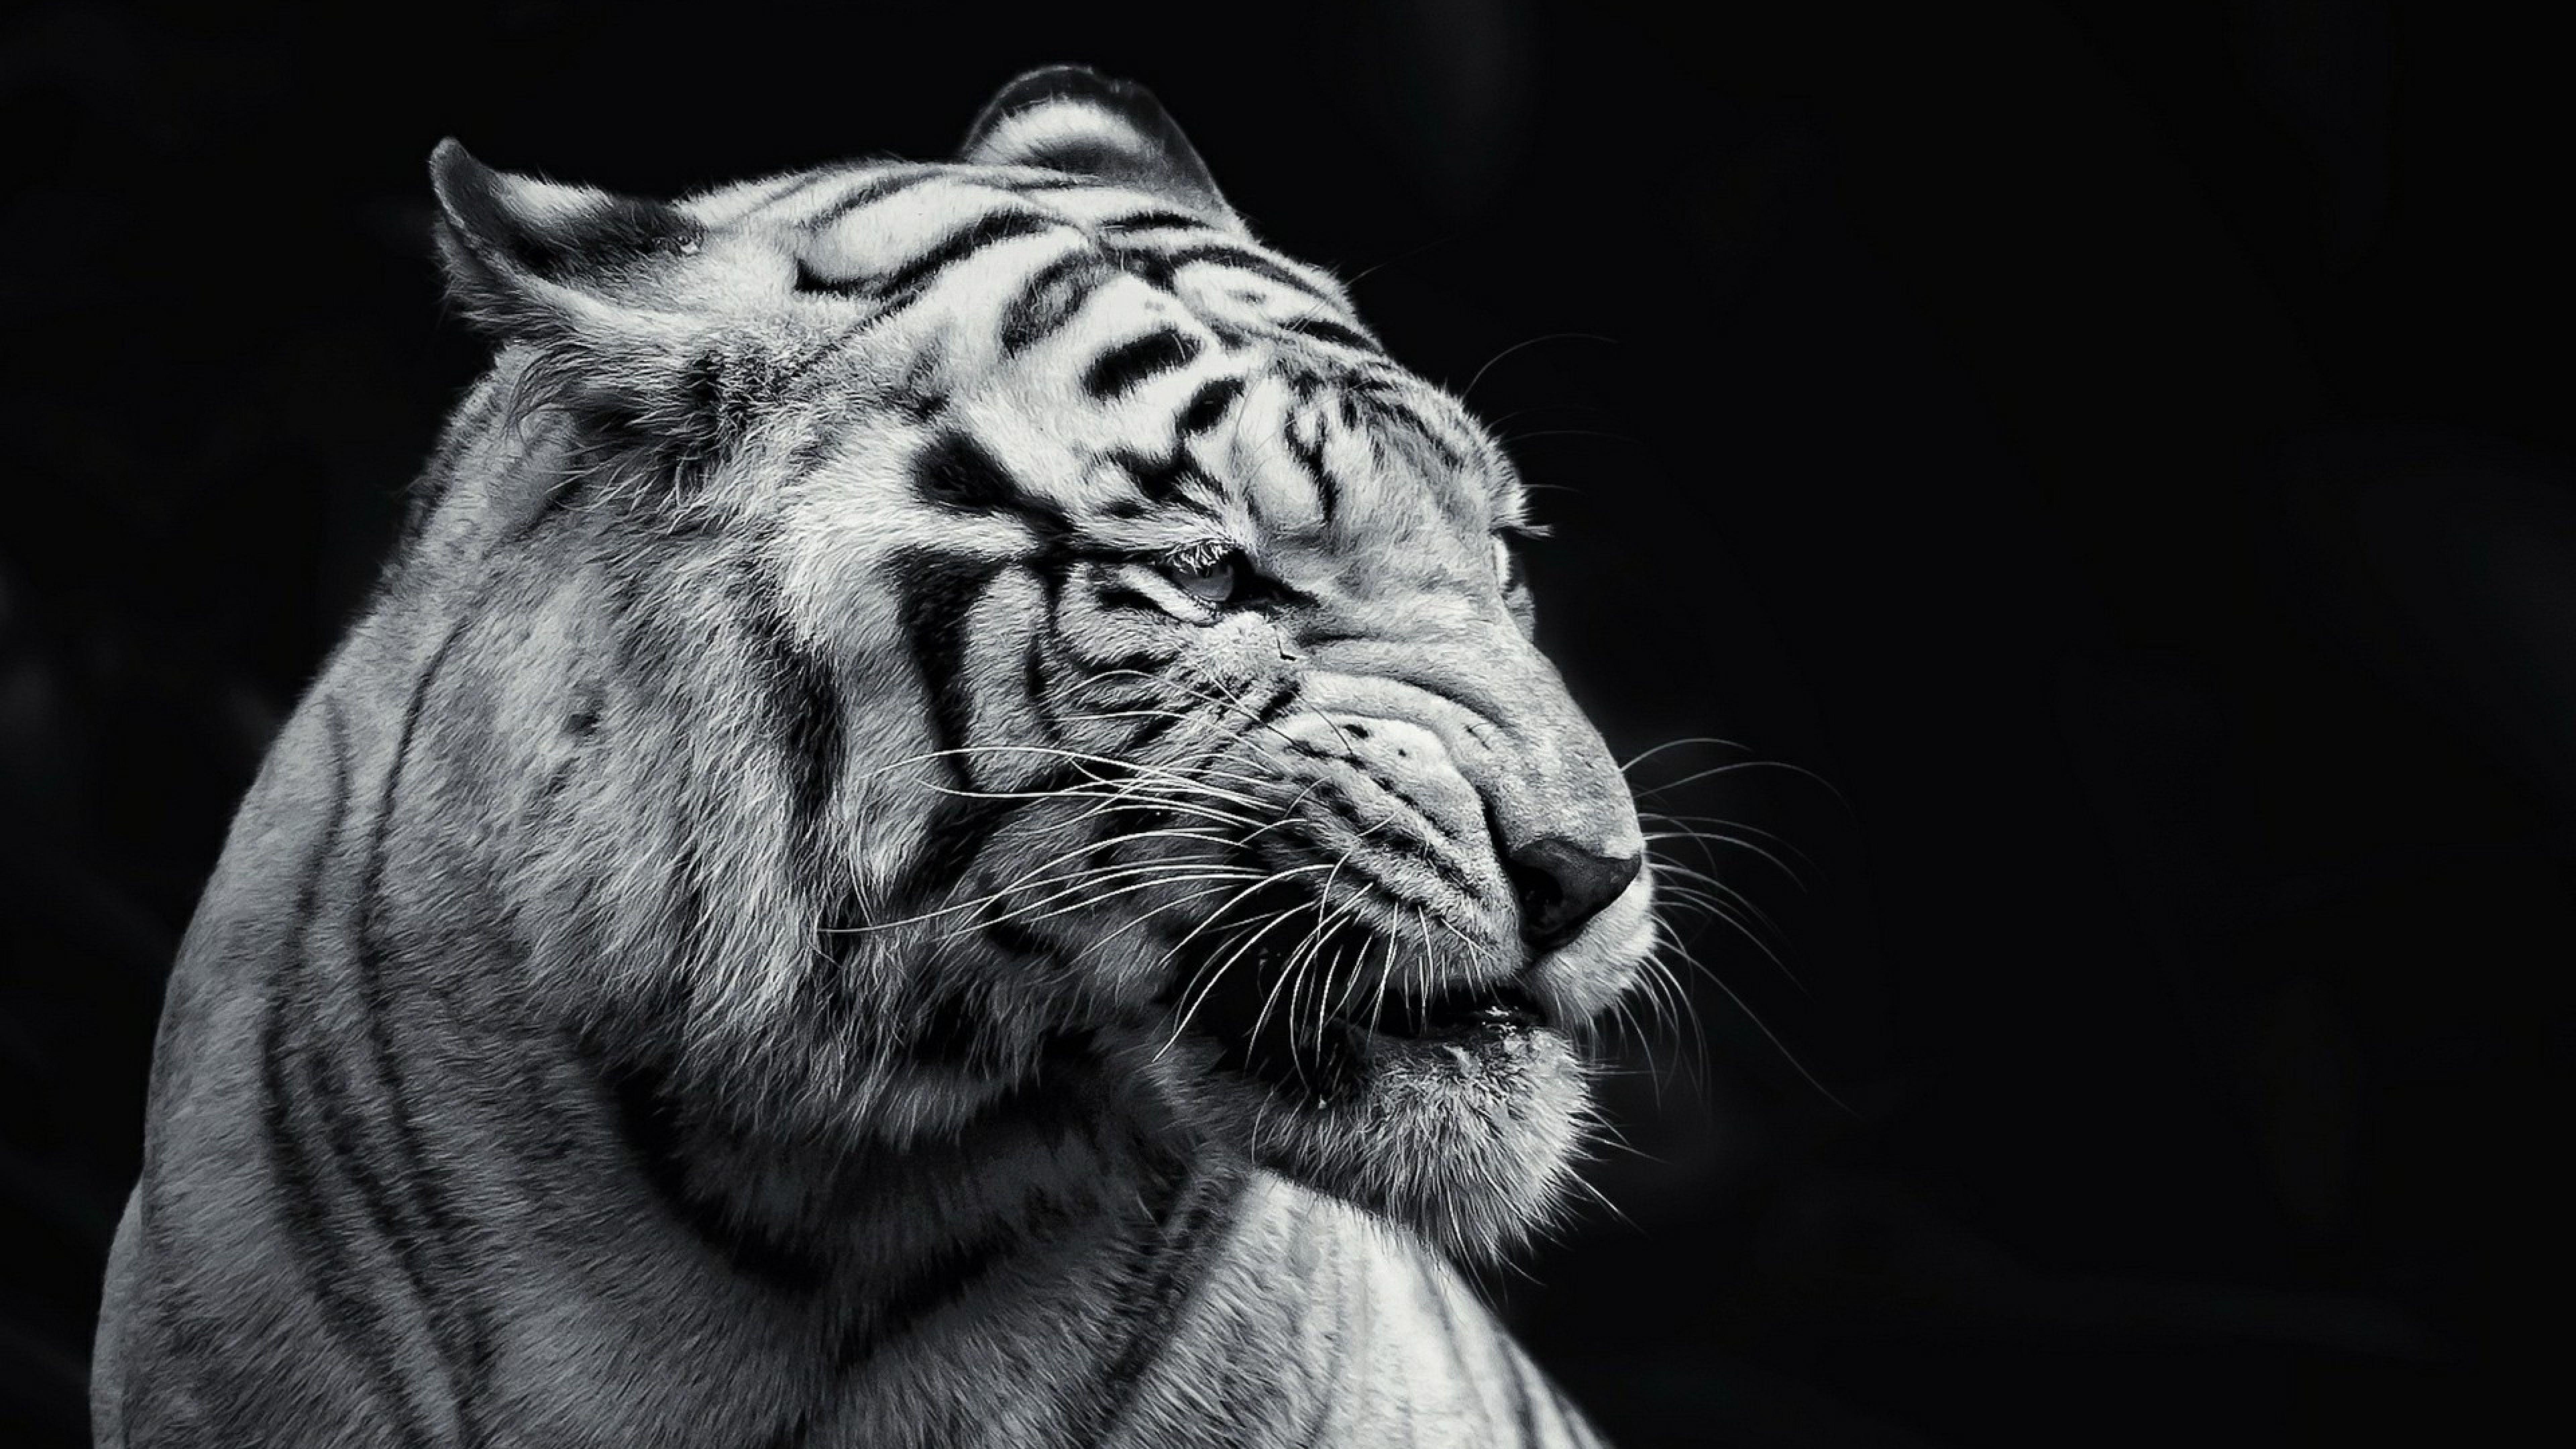 Download Gambar Hd Wallpapers Black Tiger terbaru 2020